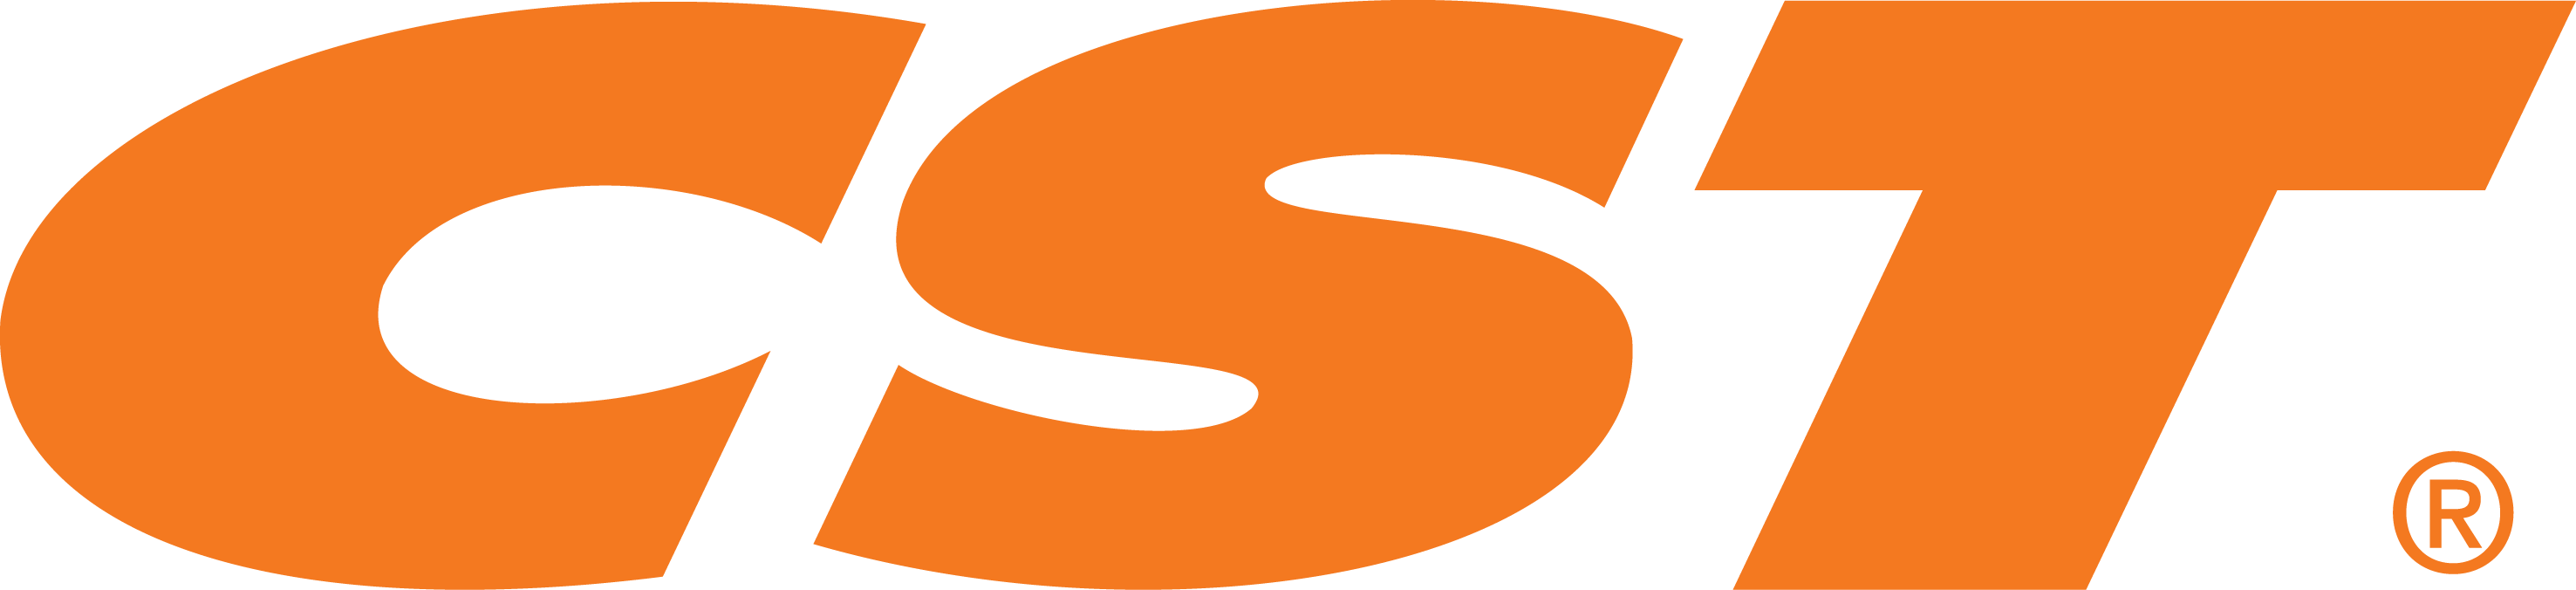 Логотип CST